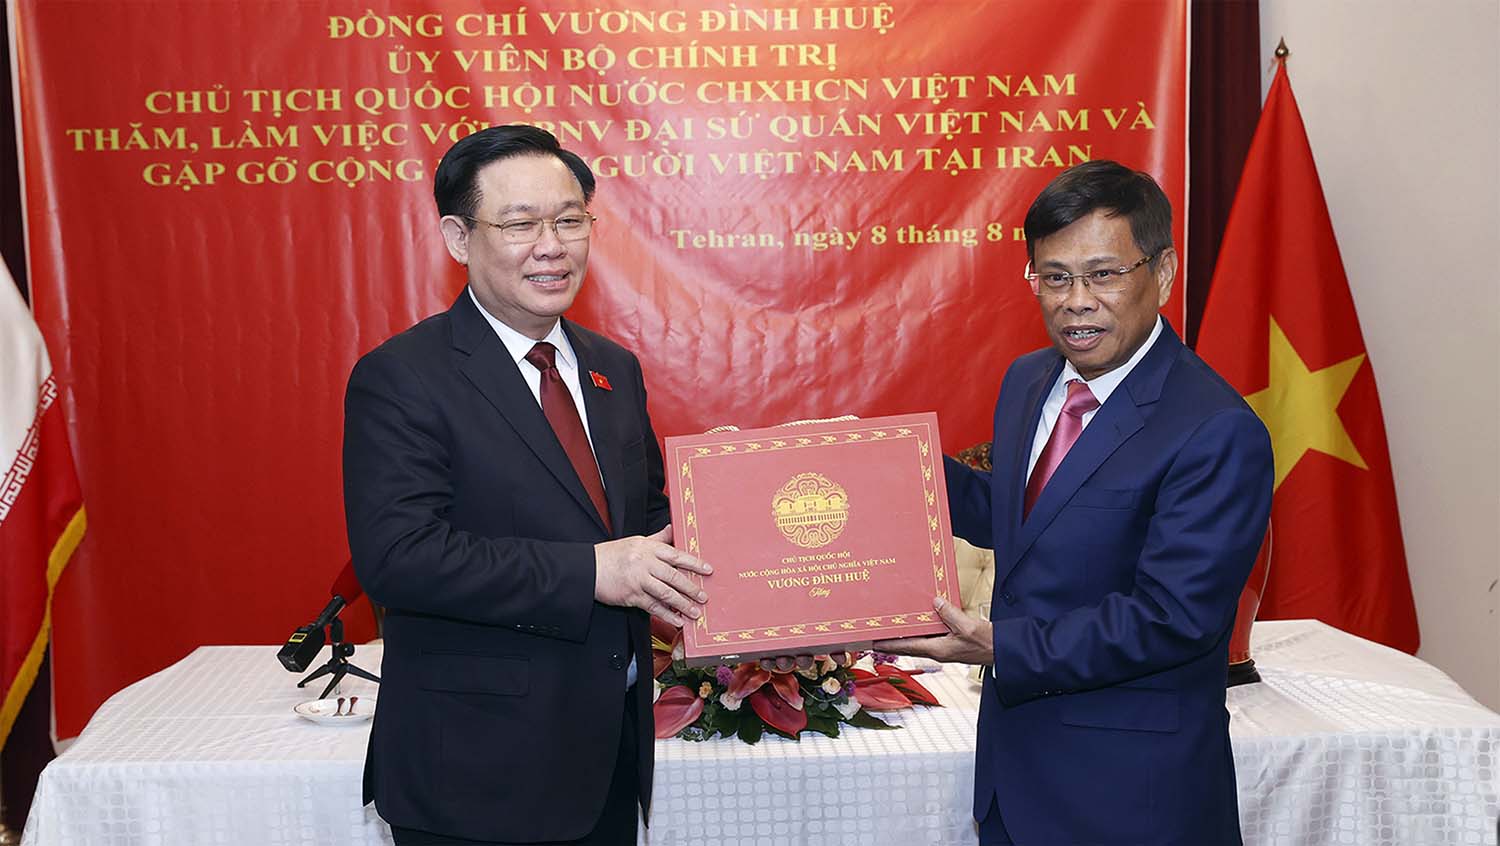 Chủ tịch Quốc hội Vương Đình Huệ tặng quà lưu niệm cho cán bộ, nhân viên Đại sứ quán và đại diện cộng đồng người Việt Nam tại Iran. Ảnh: VPQH